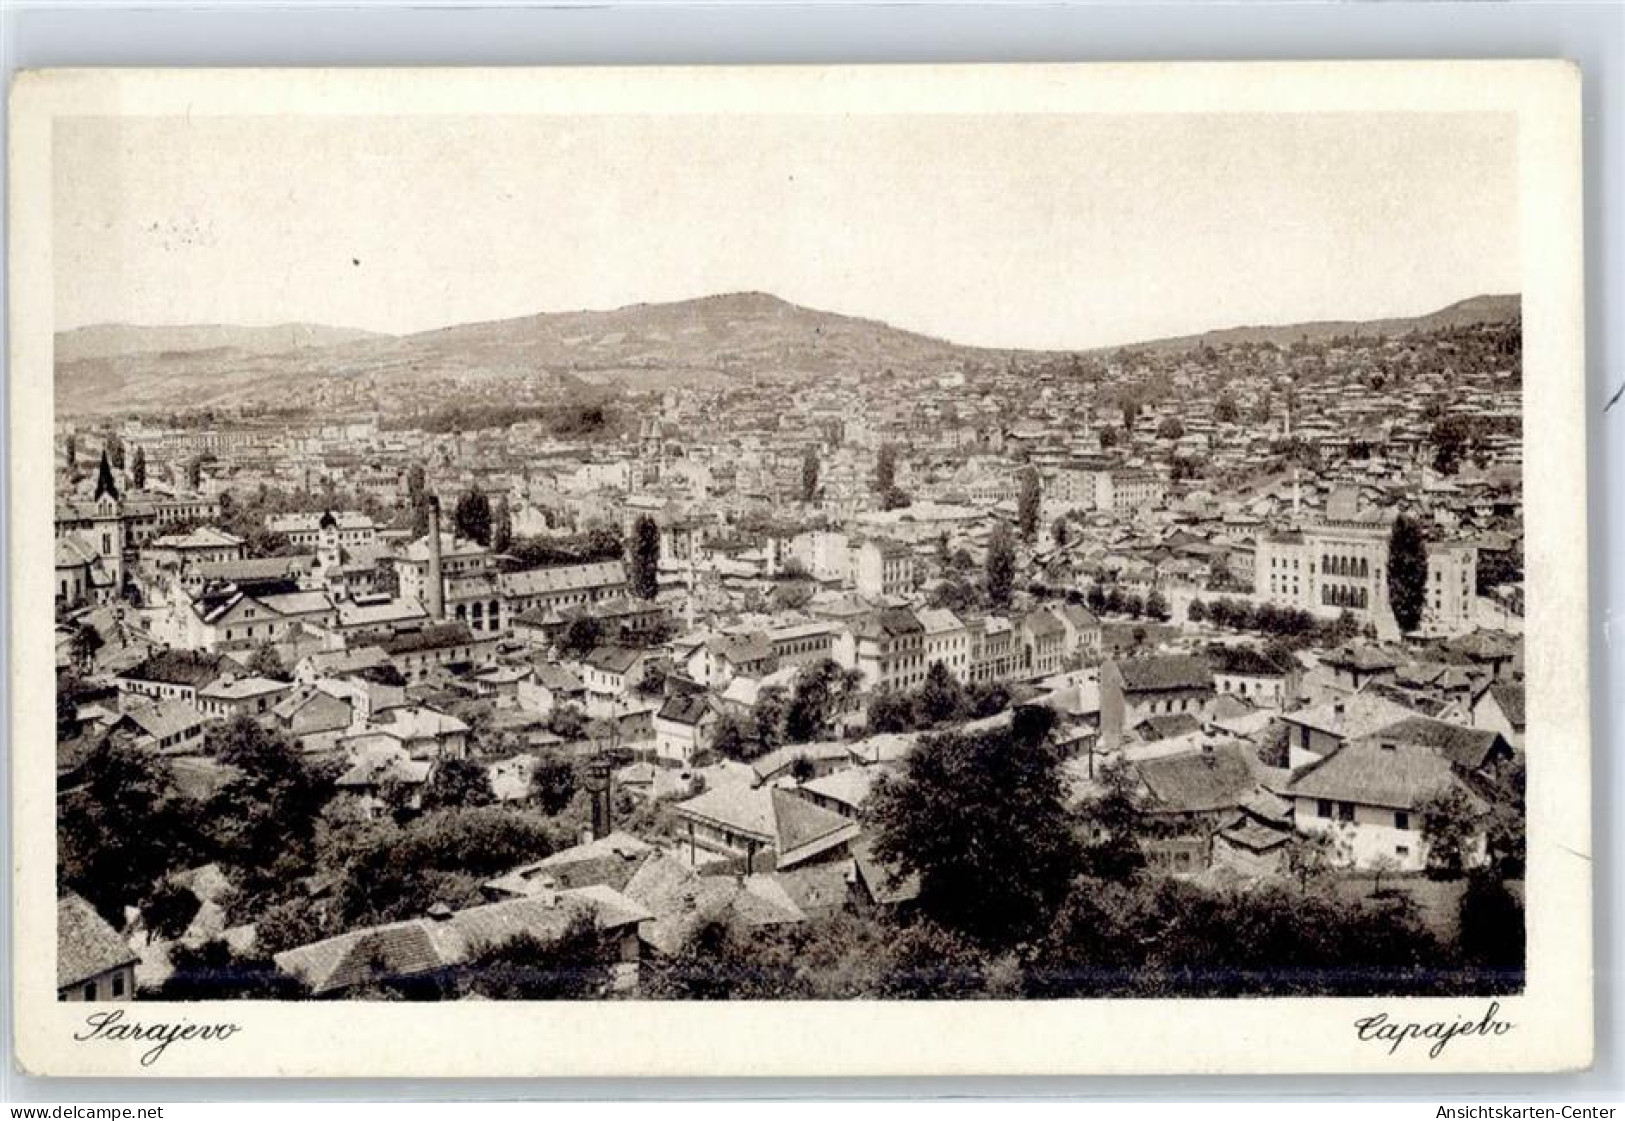 51304804 - Sarajevo Sarajewo - Bosnia And Herzegovina